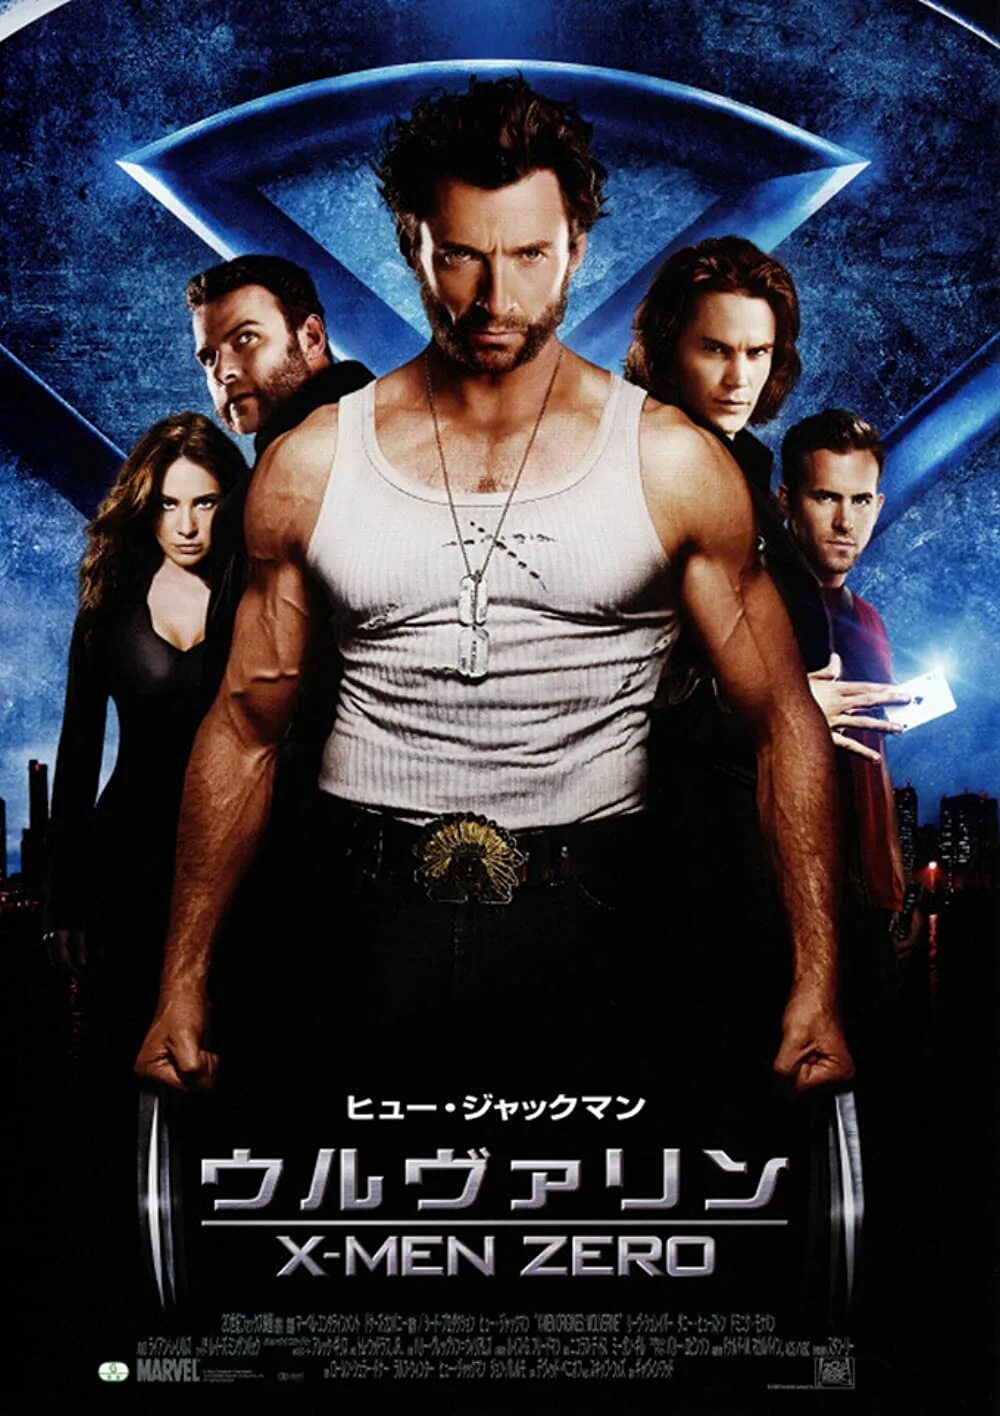 Икс начало росомаха. X-men Origins: Wolverine, 2009 posters. Люди Икс начало Росомаха 2009 Постер. Люди Икс начало Росомаха Постер. Росомаха и люди Икс Постер.